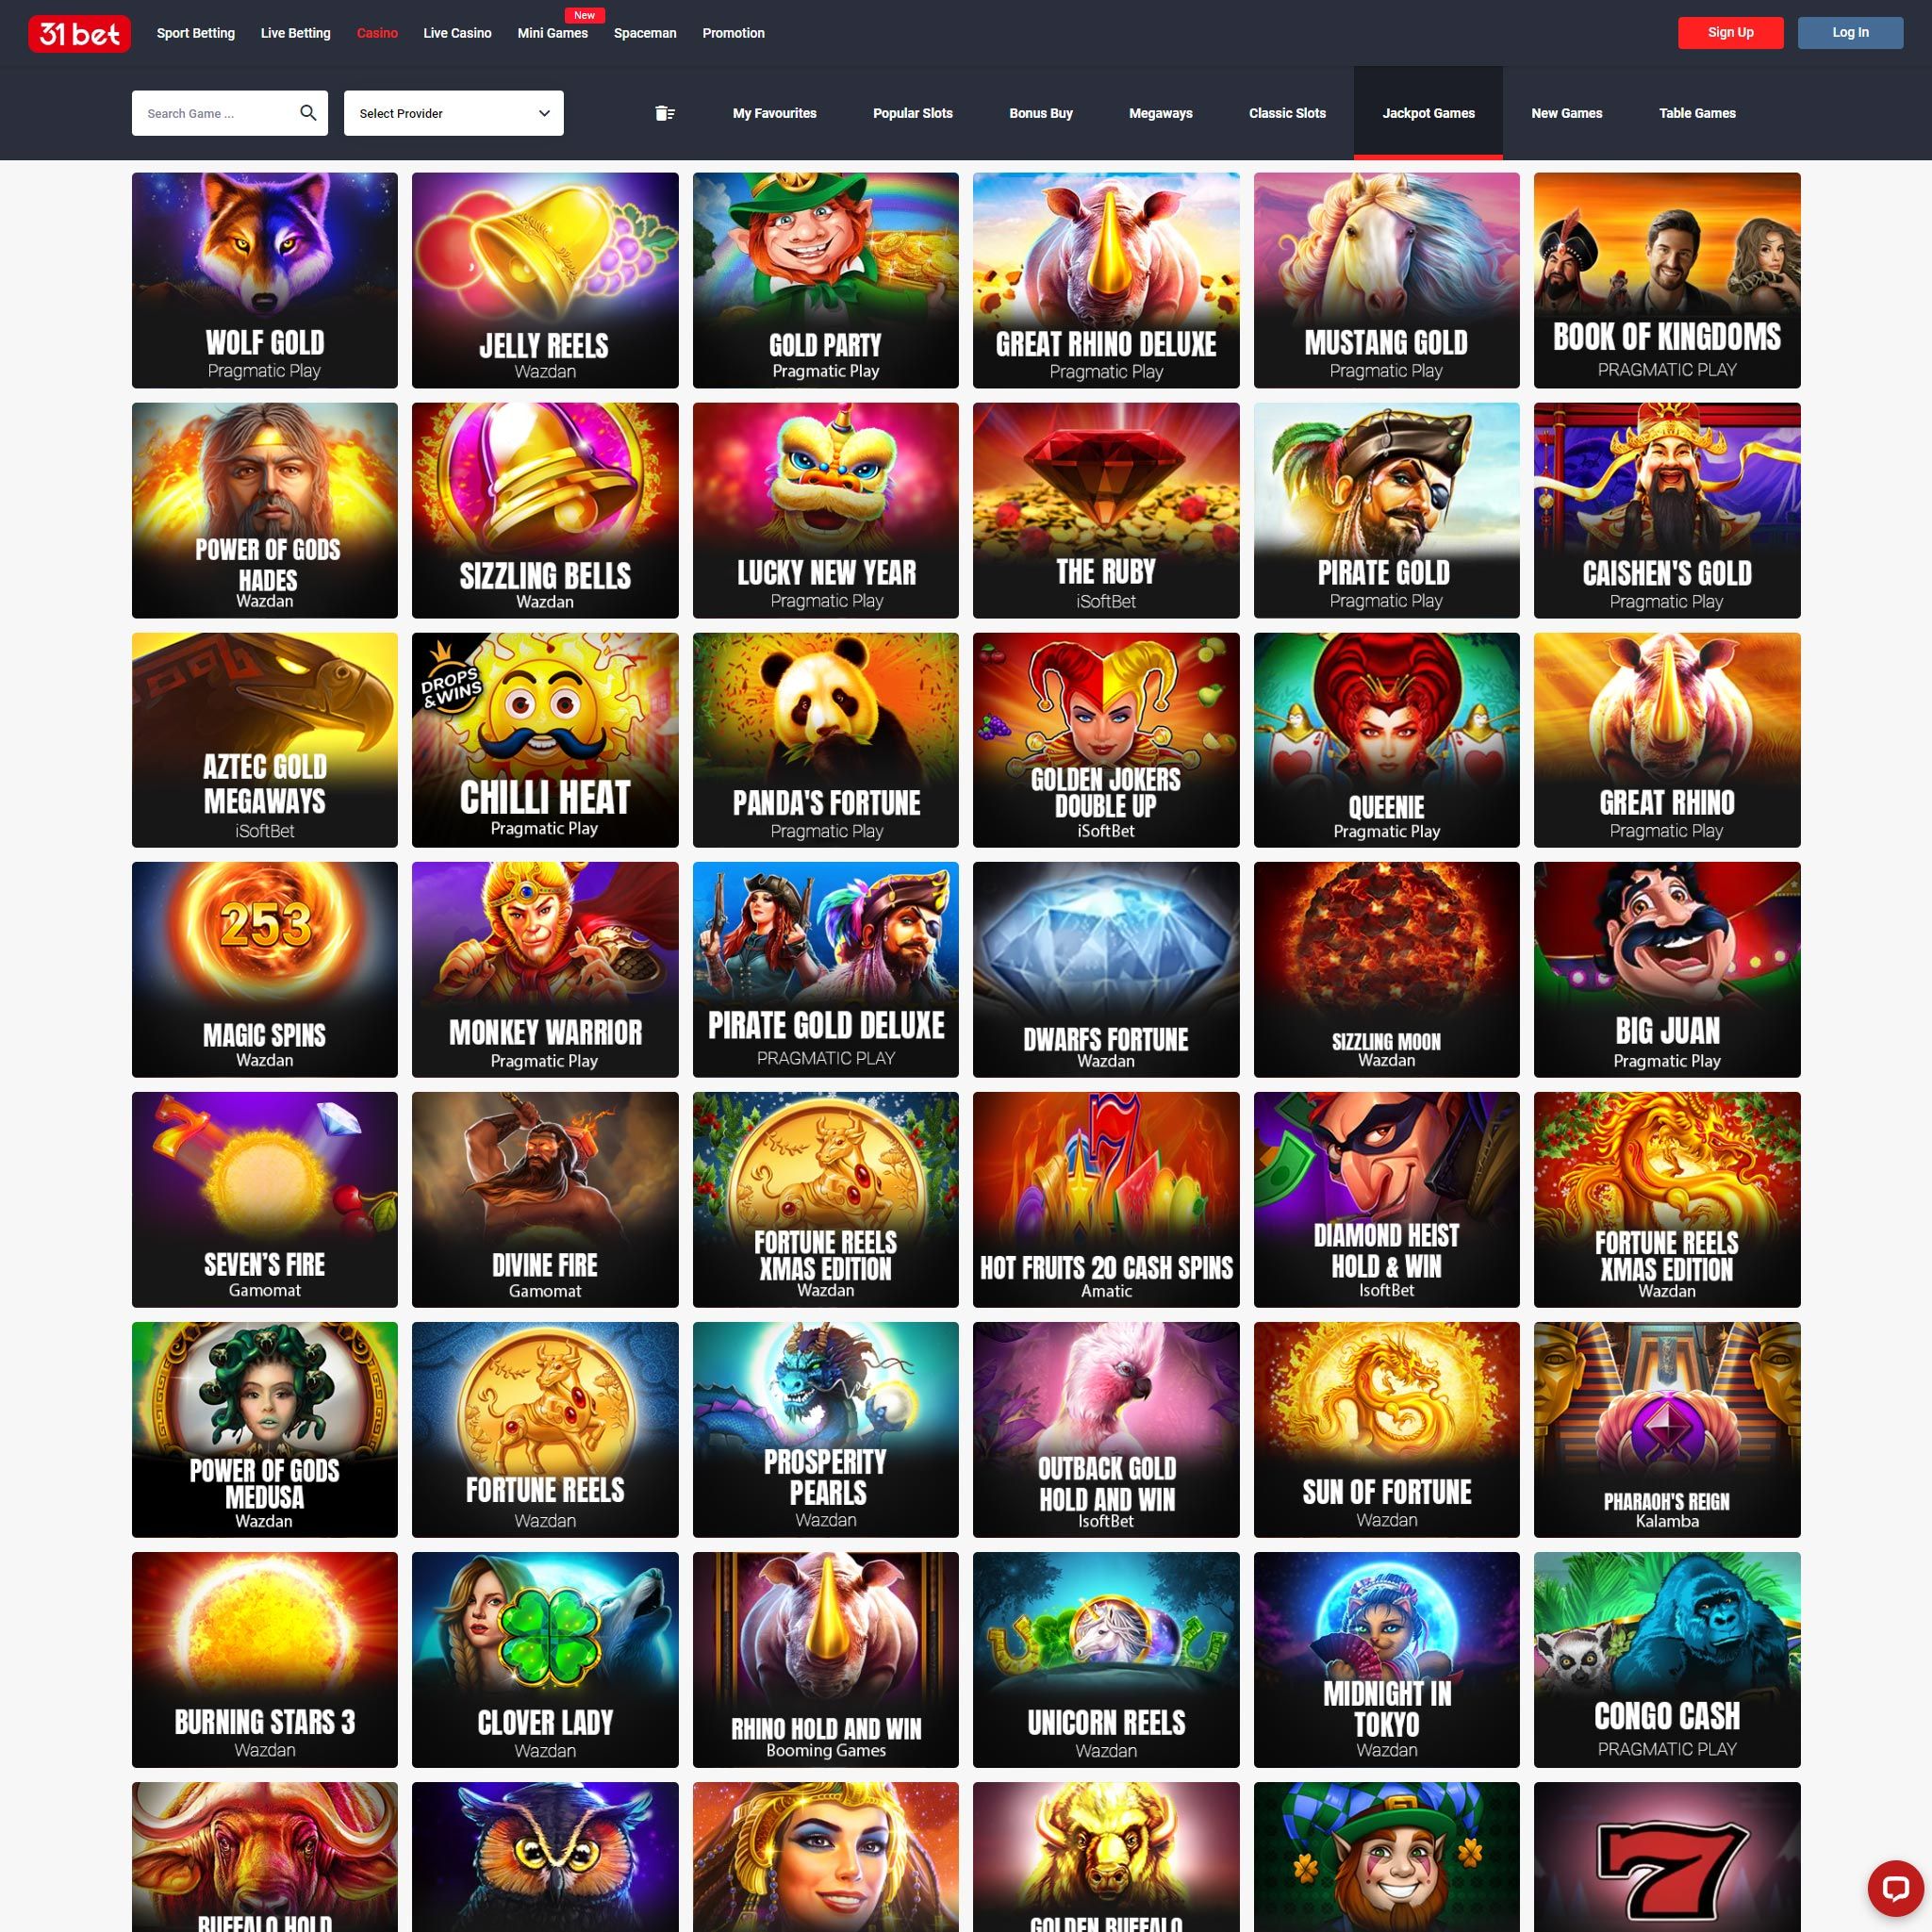 31Bet Casino game catalogue